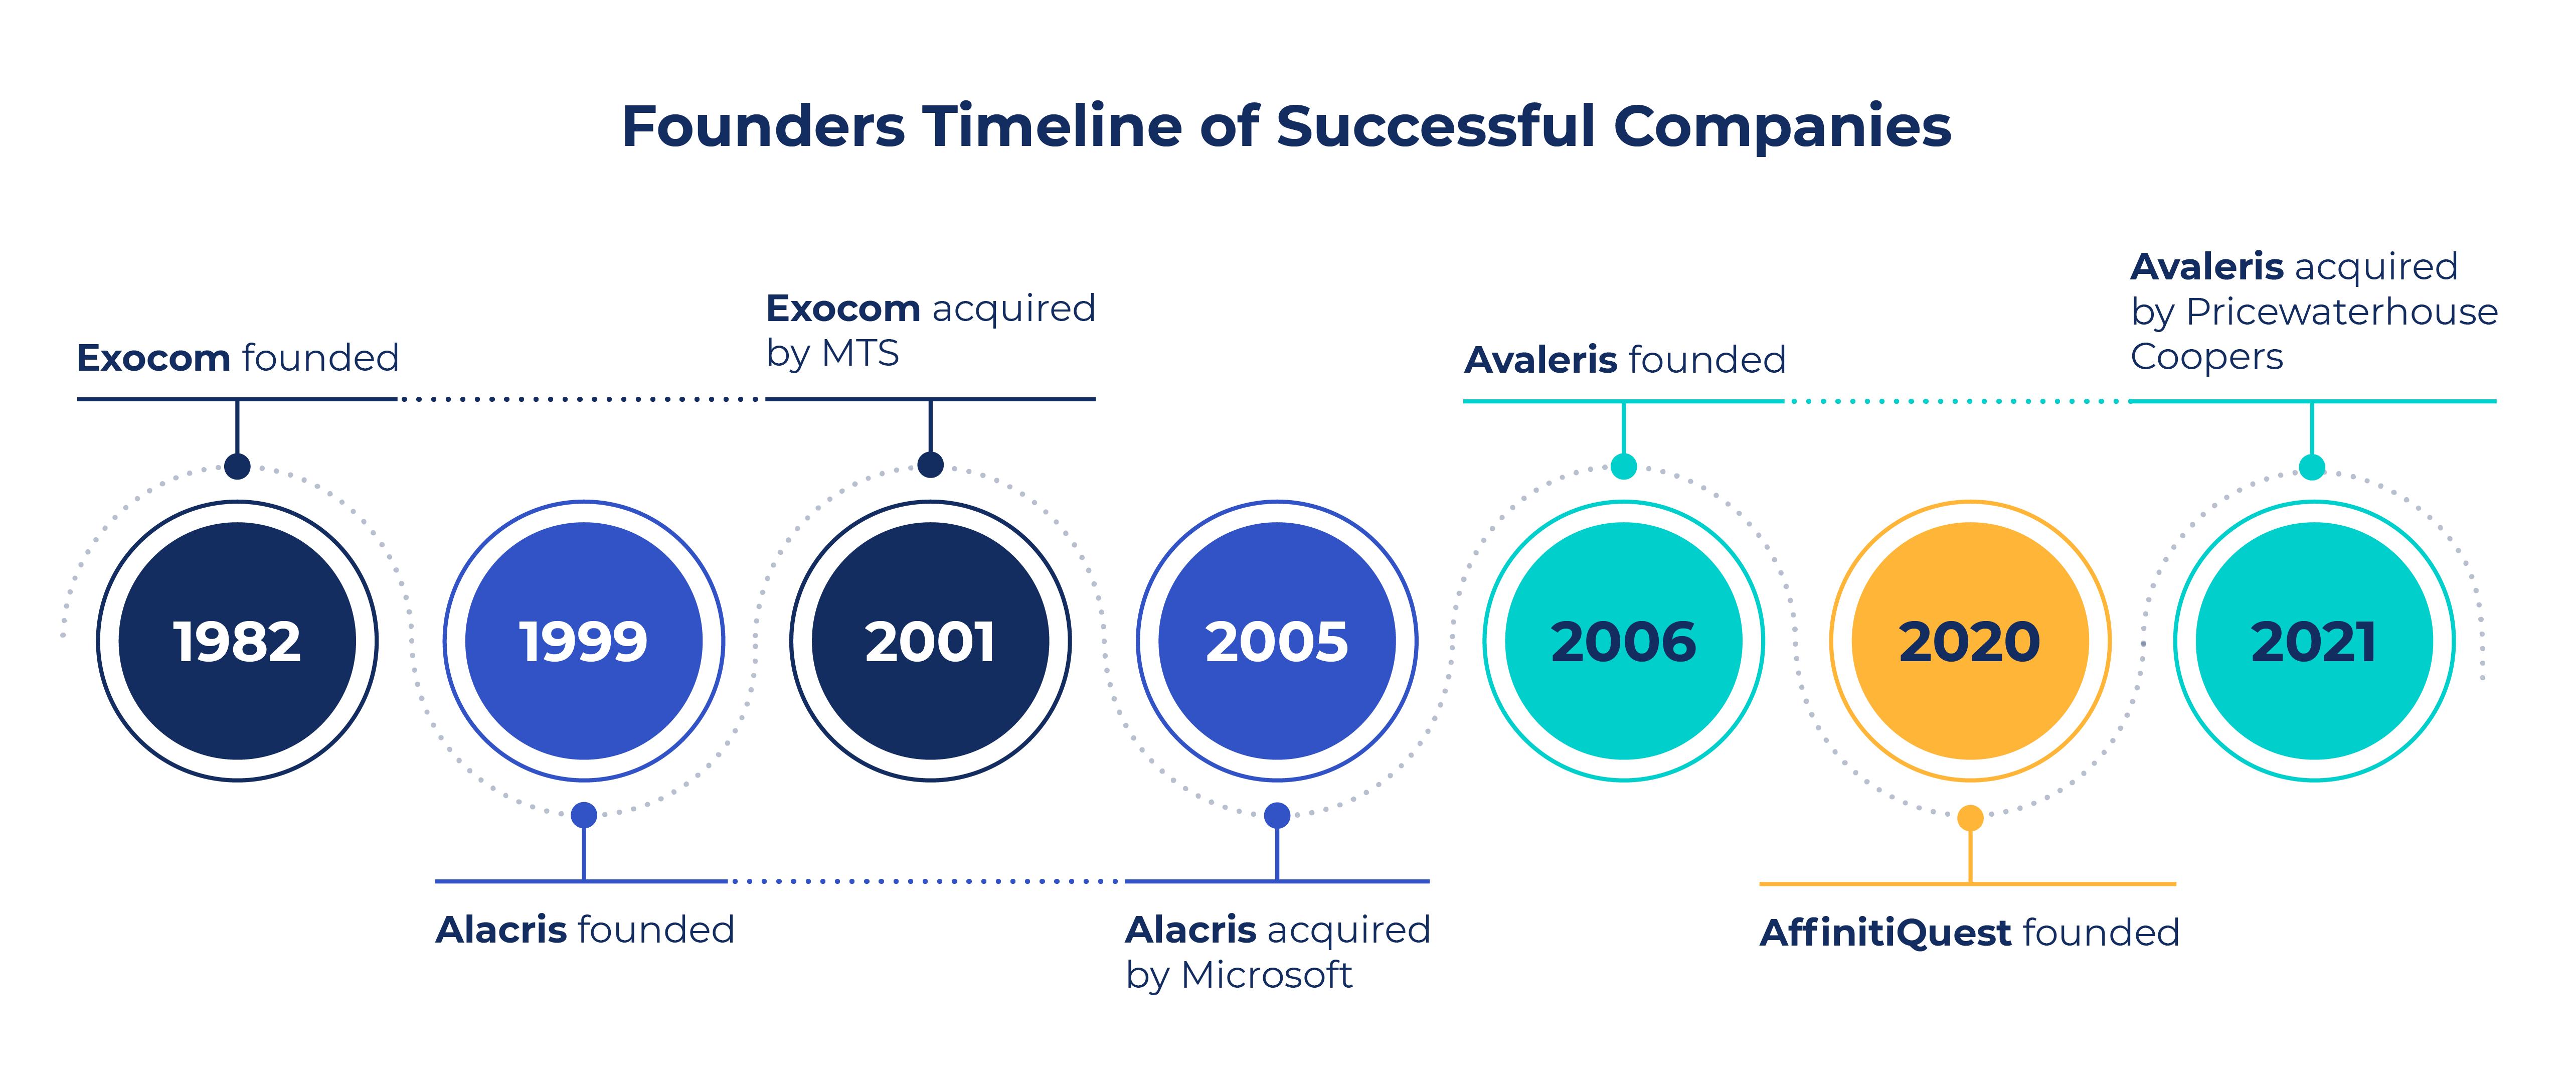 Founders Timeline of Successful Companies including: Exocom, 1982; Alacris, 1999; Avaleris, 2006; AffinitiQuest, 2020.